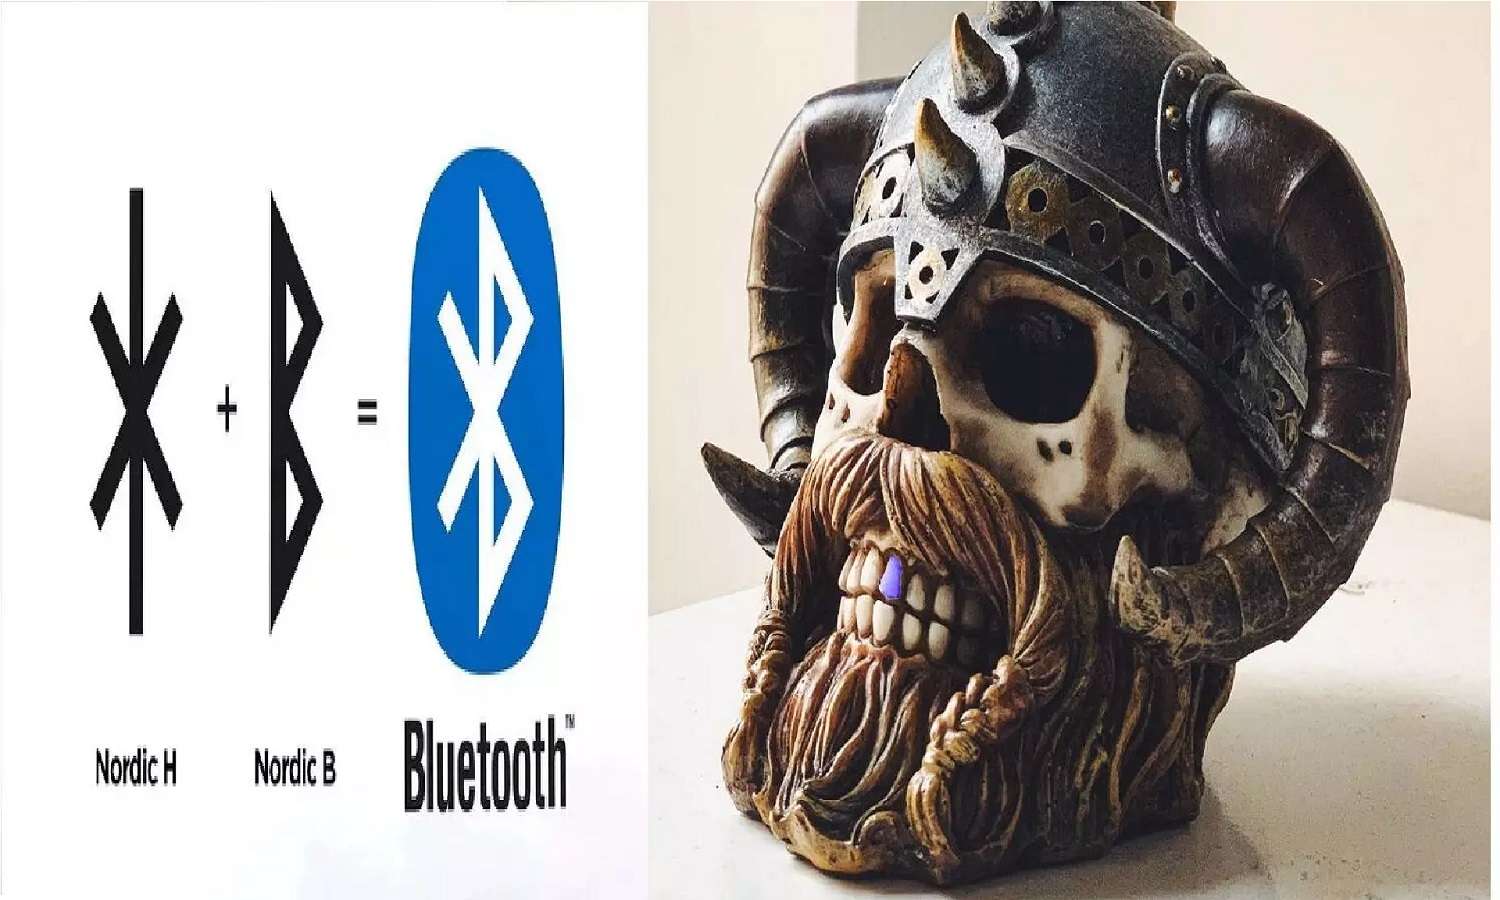 Bluetooth को ब्लूटूथ क्यों बोलते हैं, कभी सोचा है?